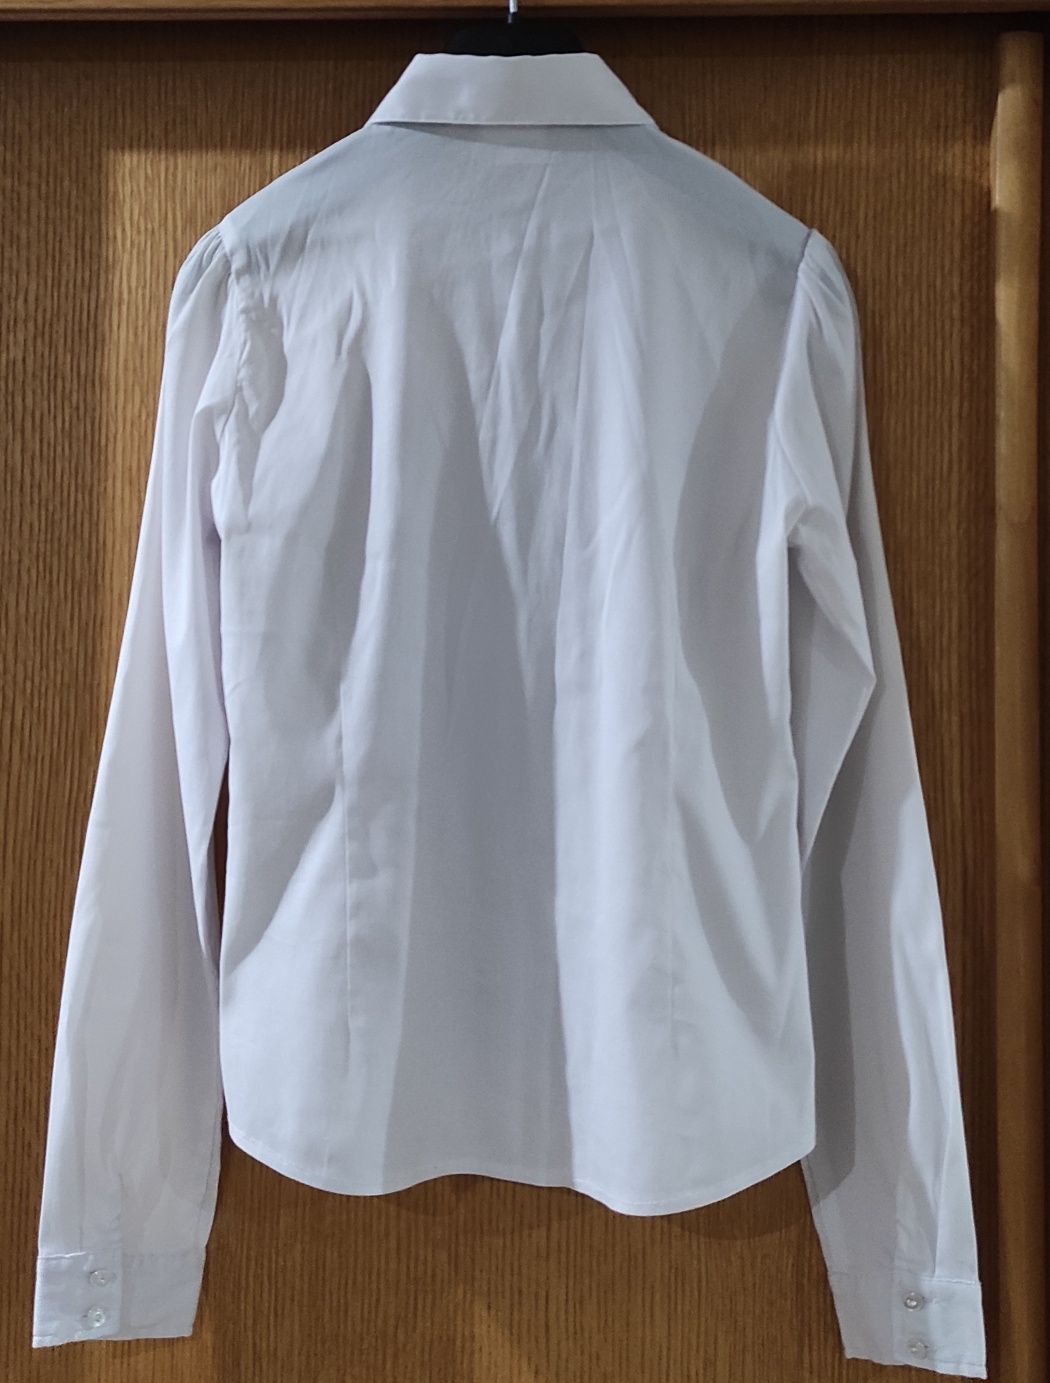 Продам школьную белую блузку на девочку, рост 152-158 см